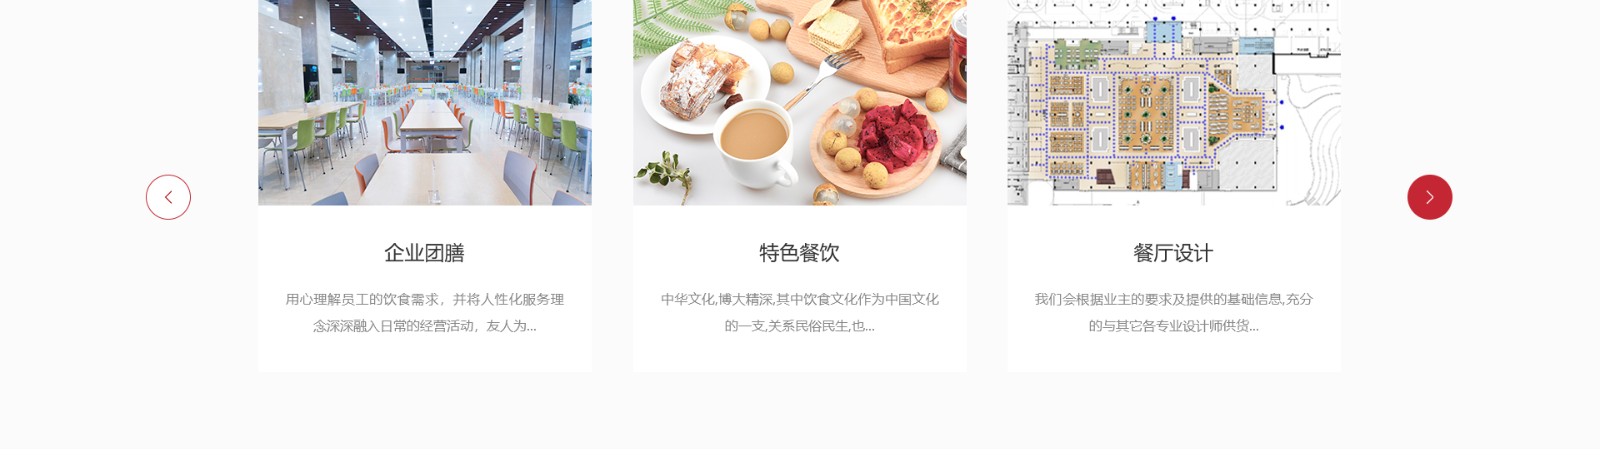 友人餐饮管理_餐饮行业平台网站_洛壹网络平台开发